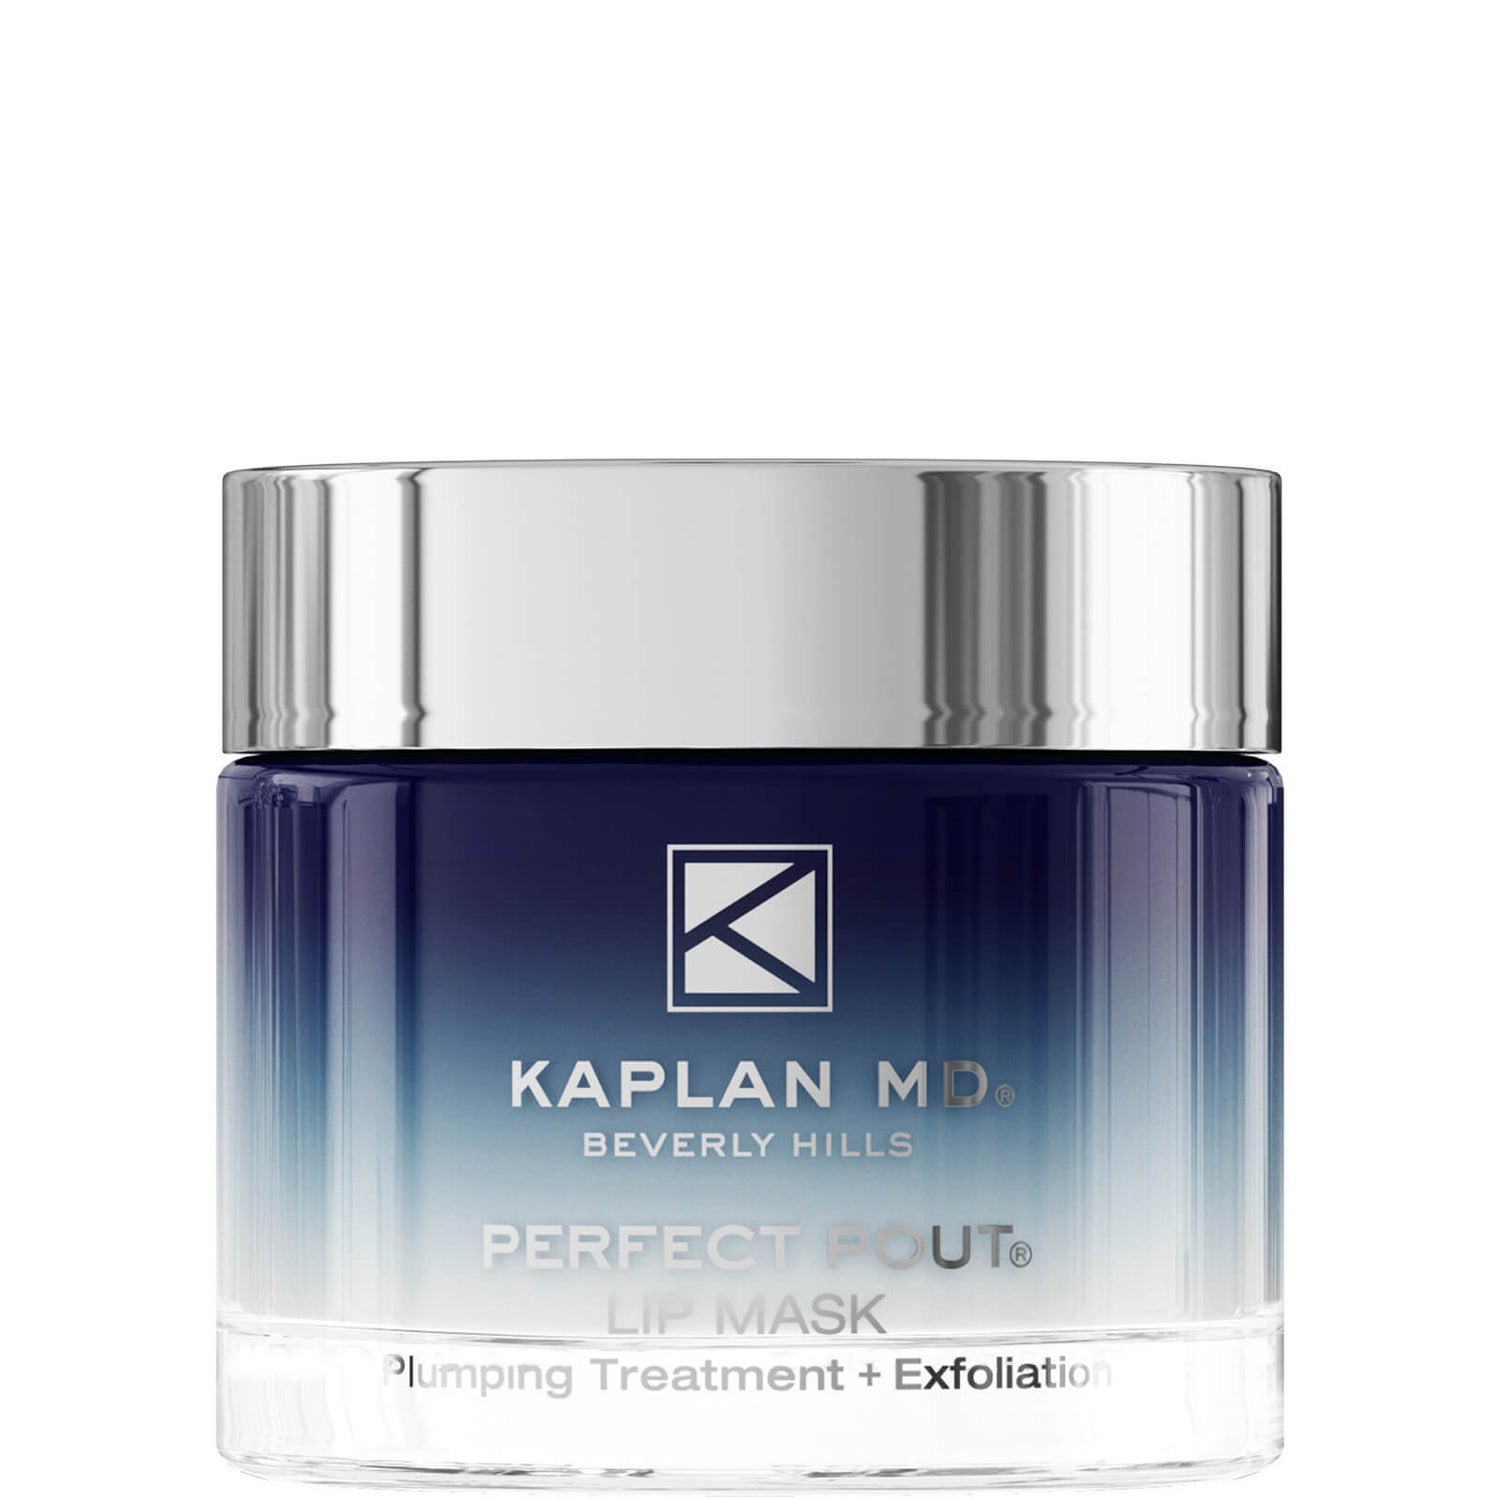 KaplanMD Lip Mask